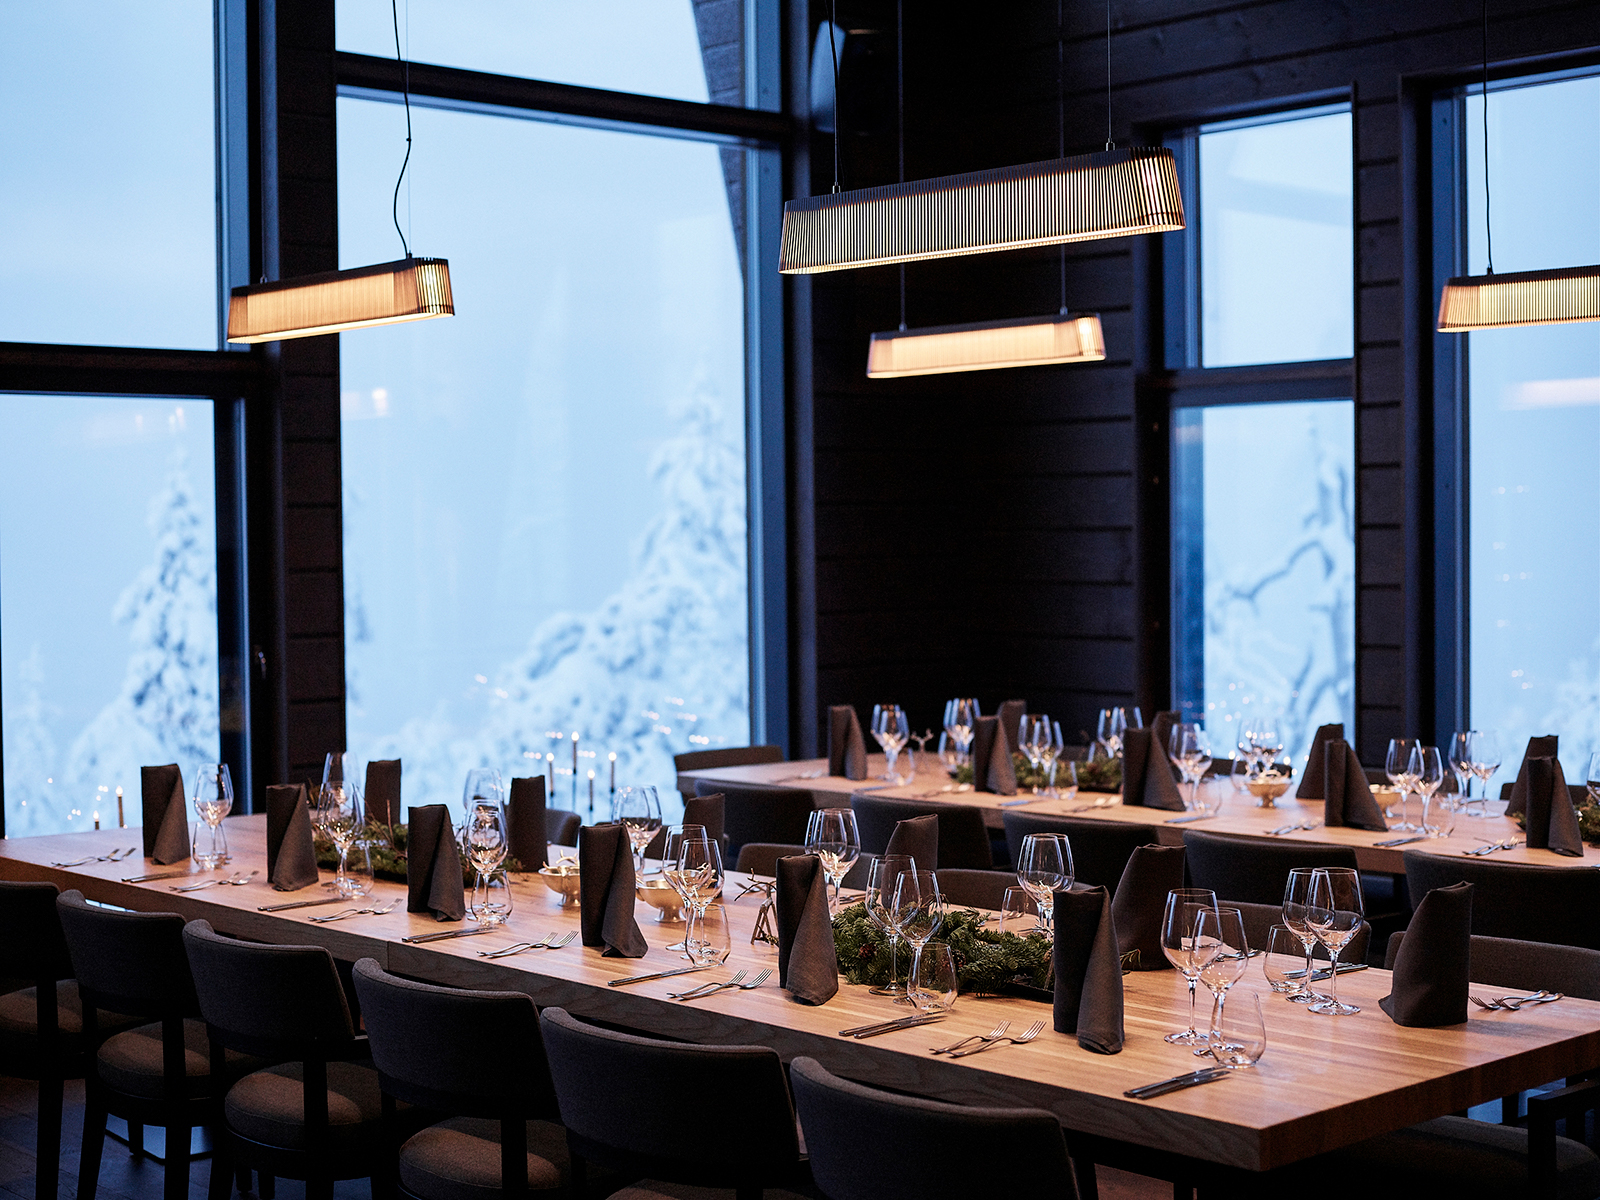 Ein Speisesaal mit Owalo Pendelleuchten. Die Tische sind gedeckt, im Hintergrund zeigen große Fenster eine Winterlandschaft.